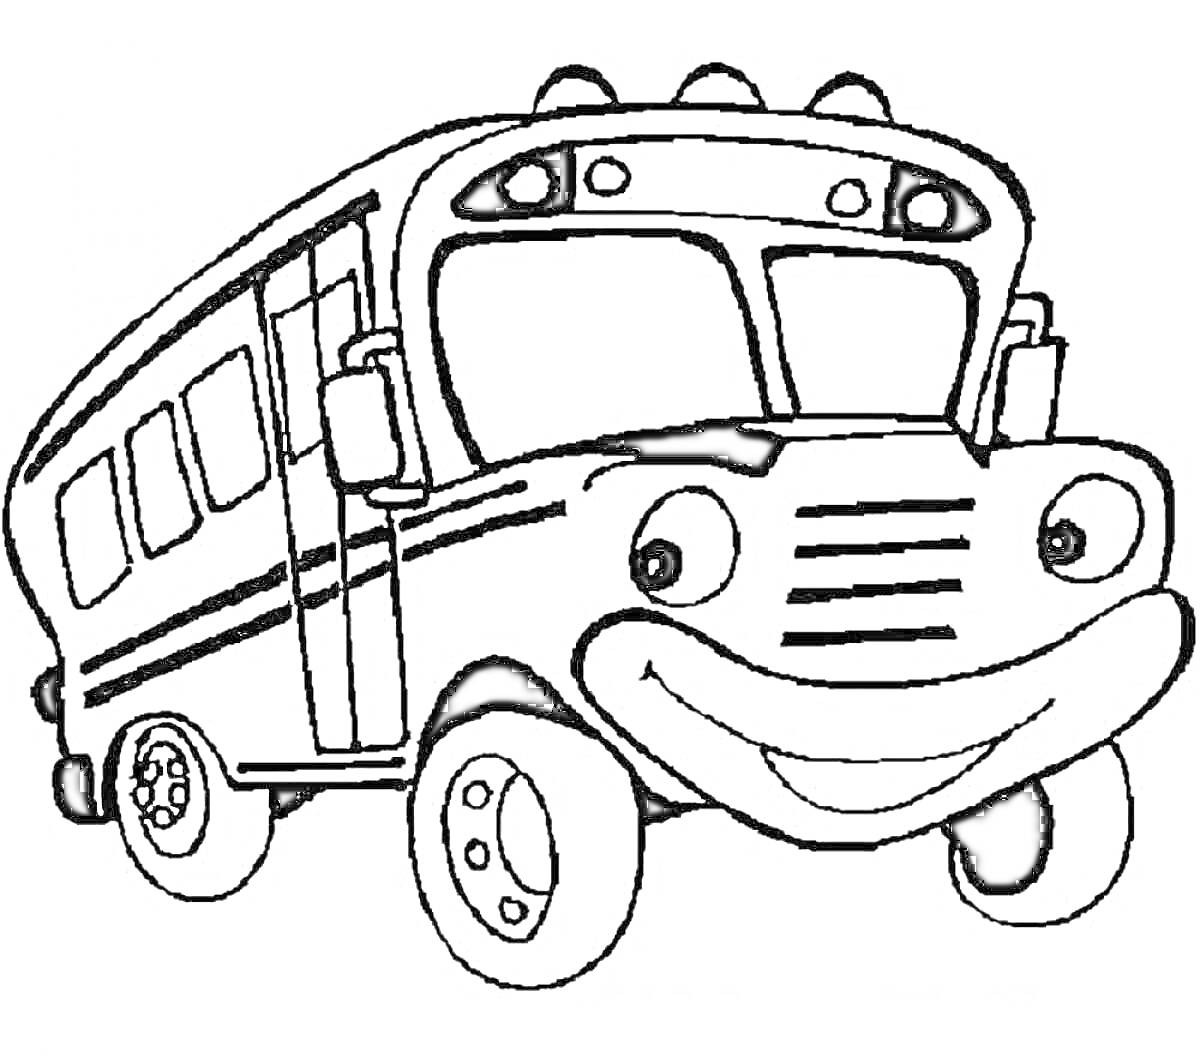 Раскраска Улыбающийся автобус с большими глазами и пятью окнами